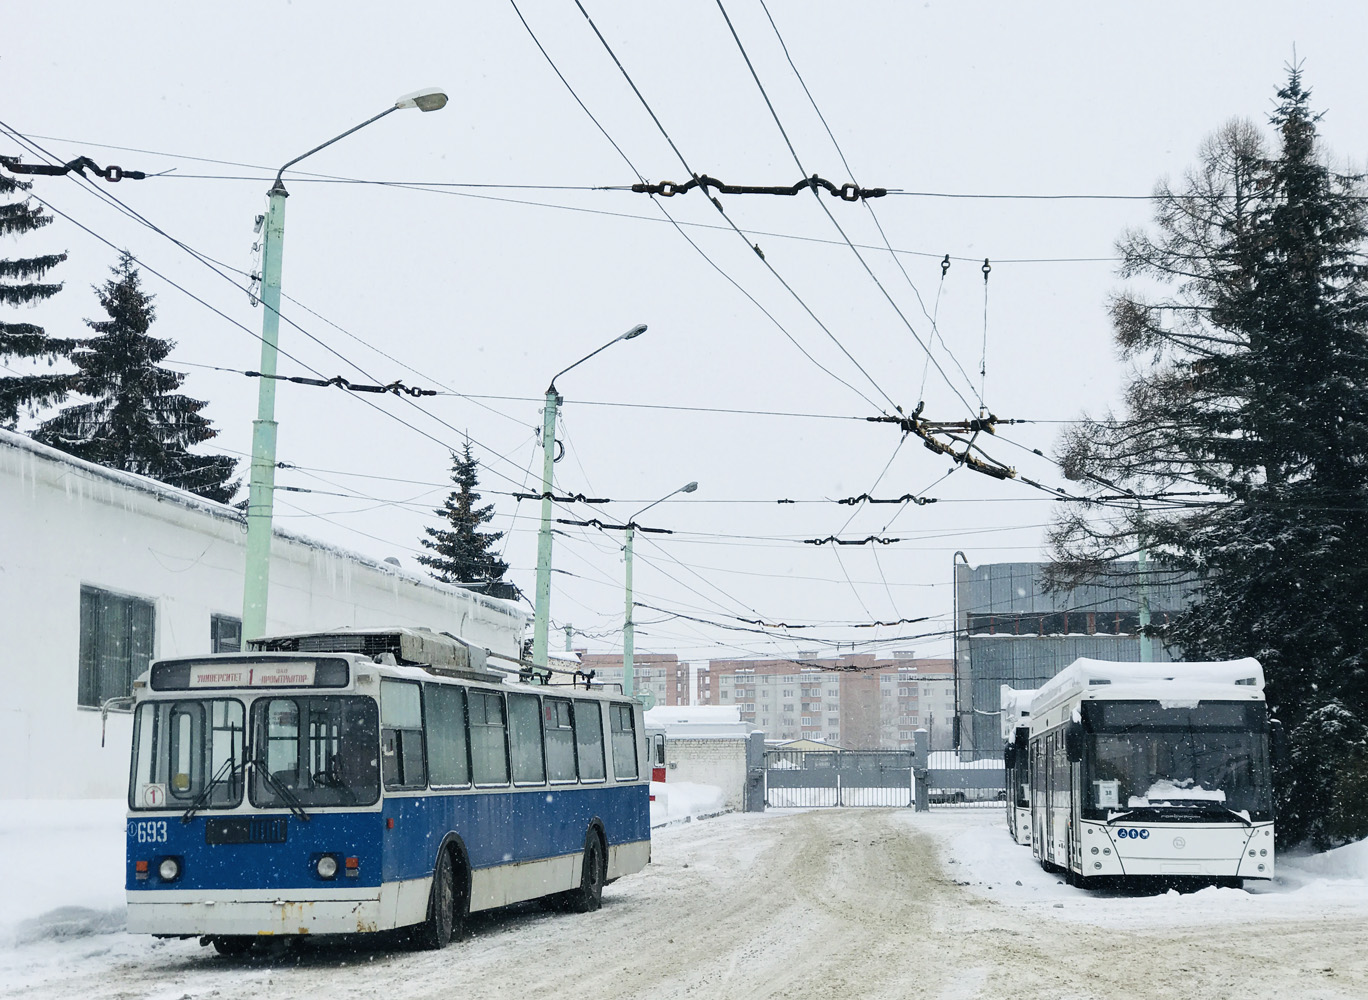 Tšeboksarõ — Trolleybus depot